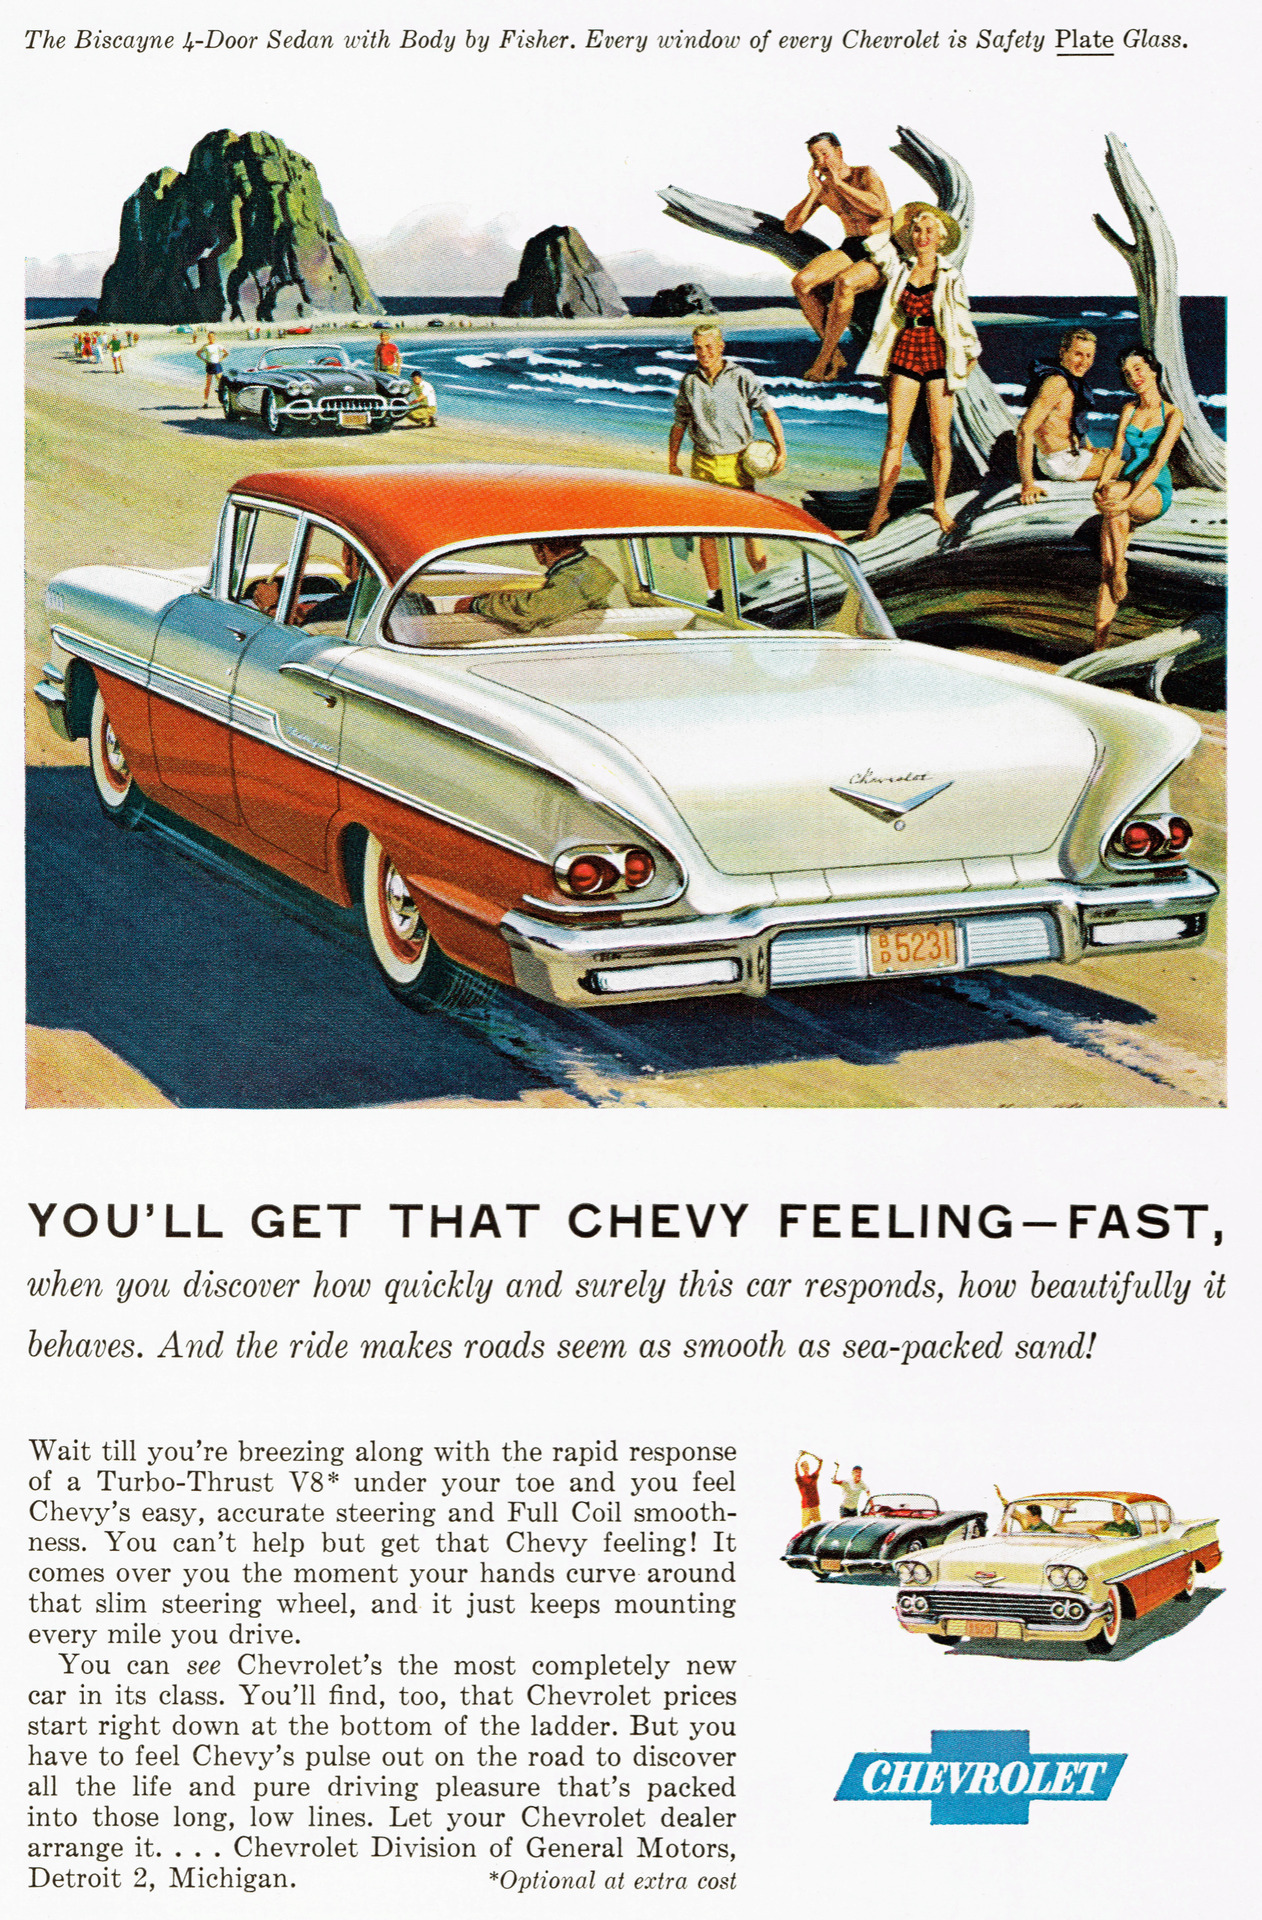 1958 Chevrolet Biscayne 4-Door Sedan